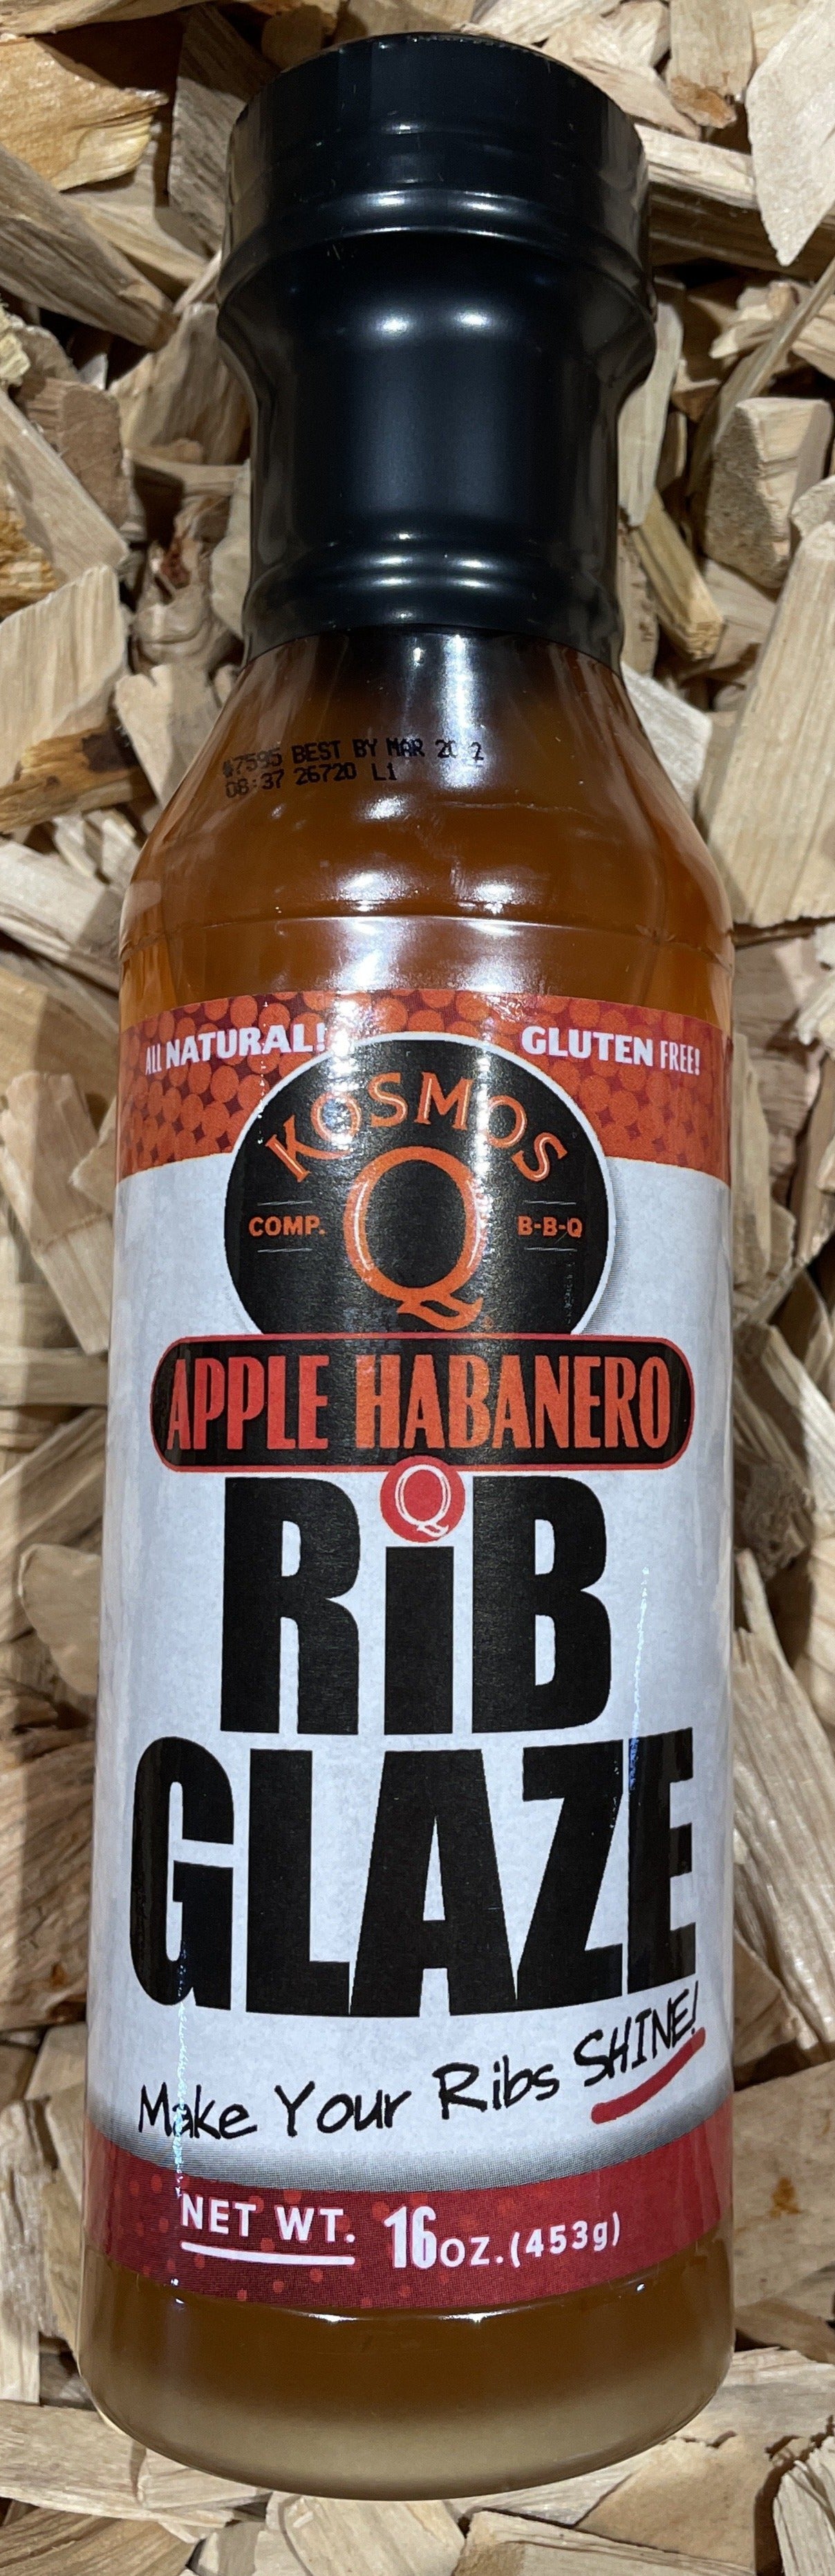 Kosmos Q Rib Glaze - Apple Habanero